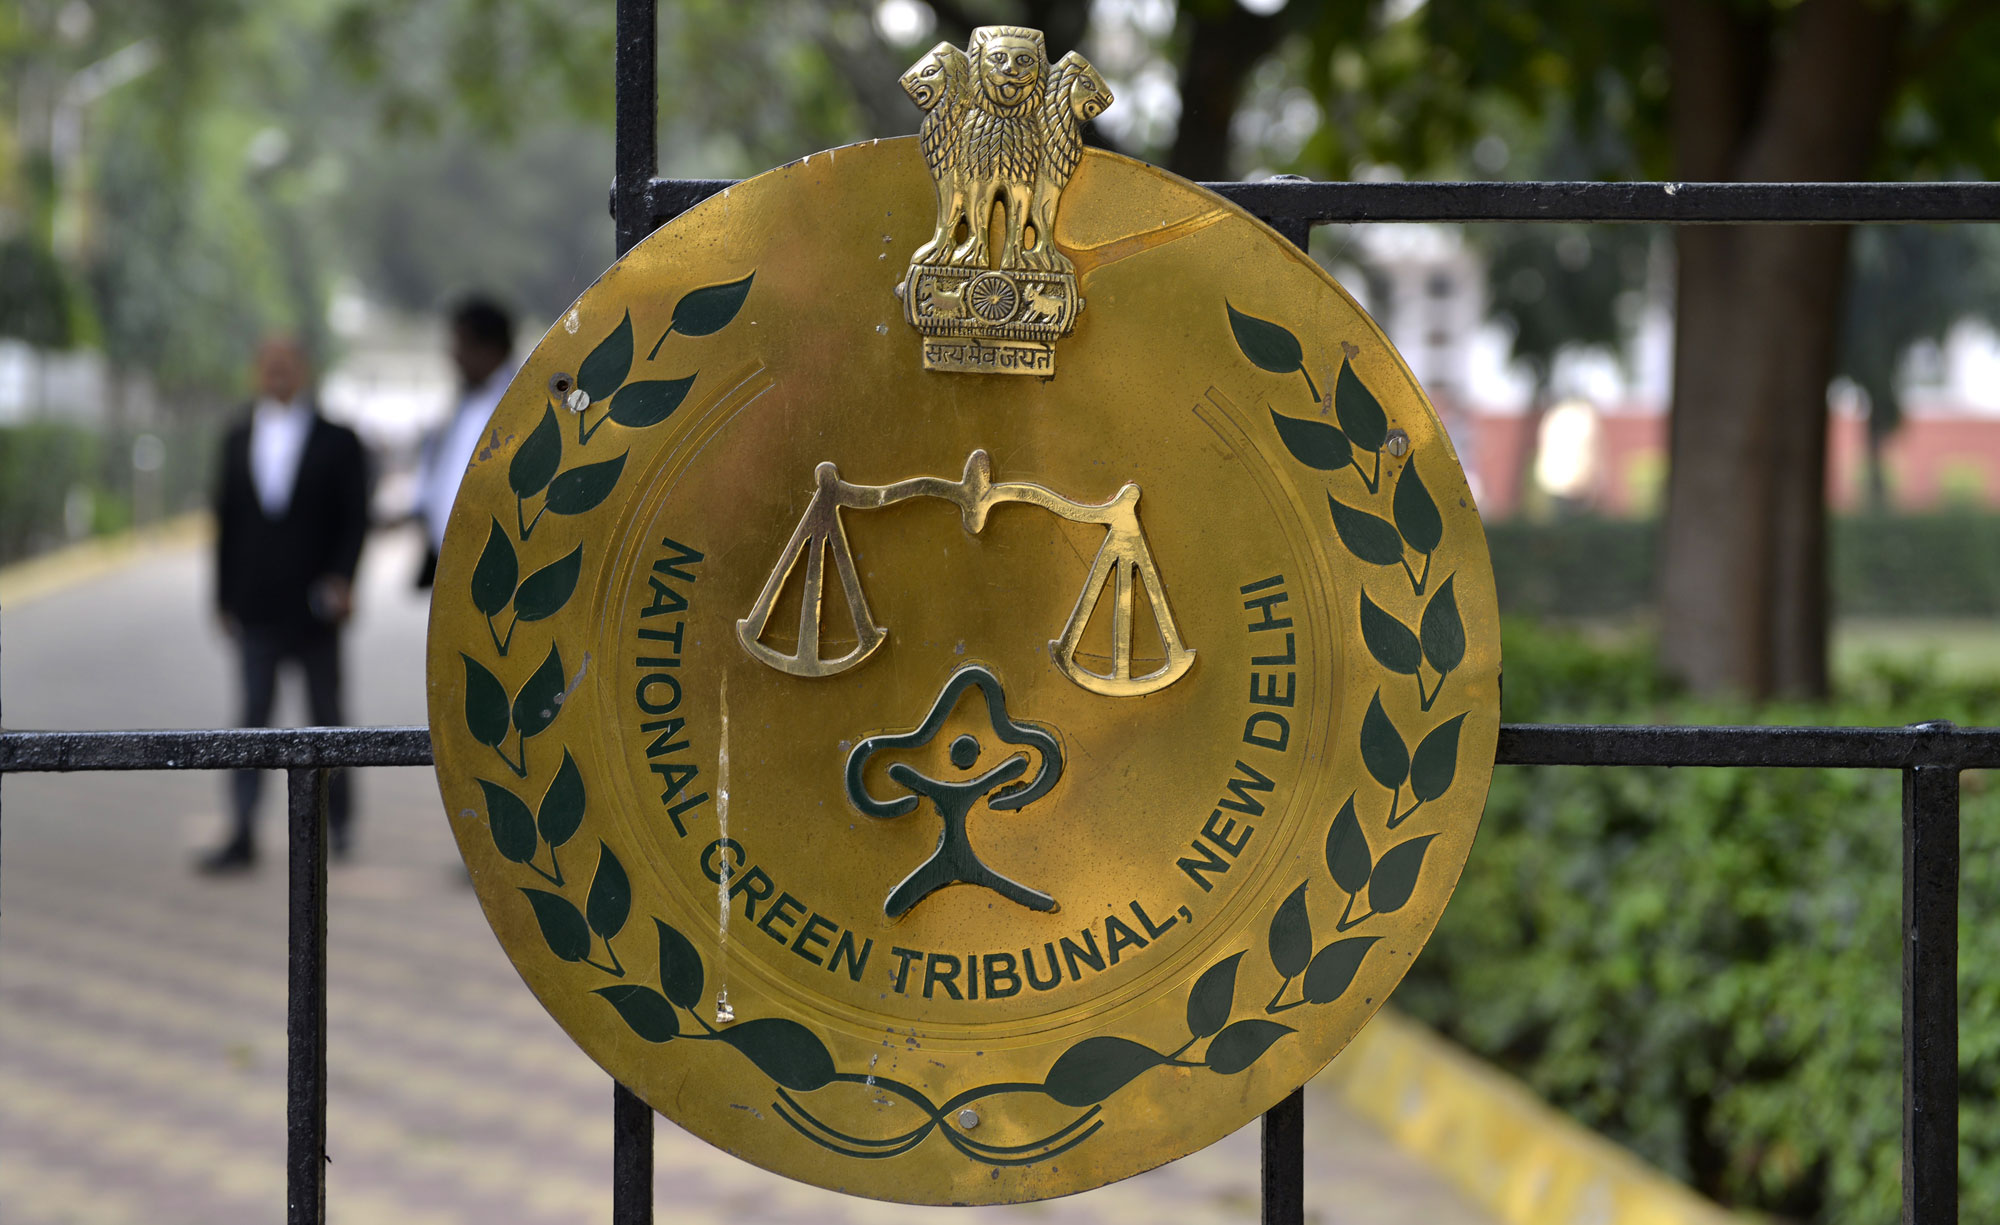 National Green Tribunal order ‘pushes back’ CNG timeline in Kolkata